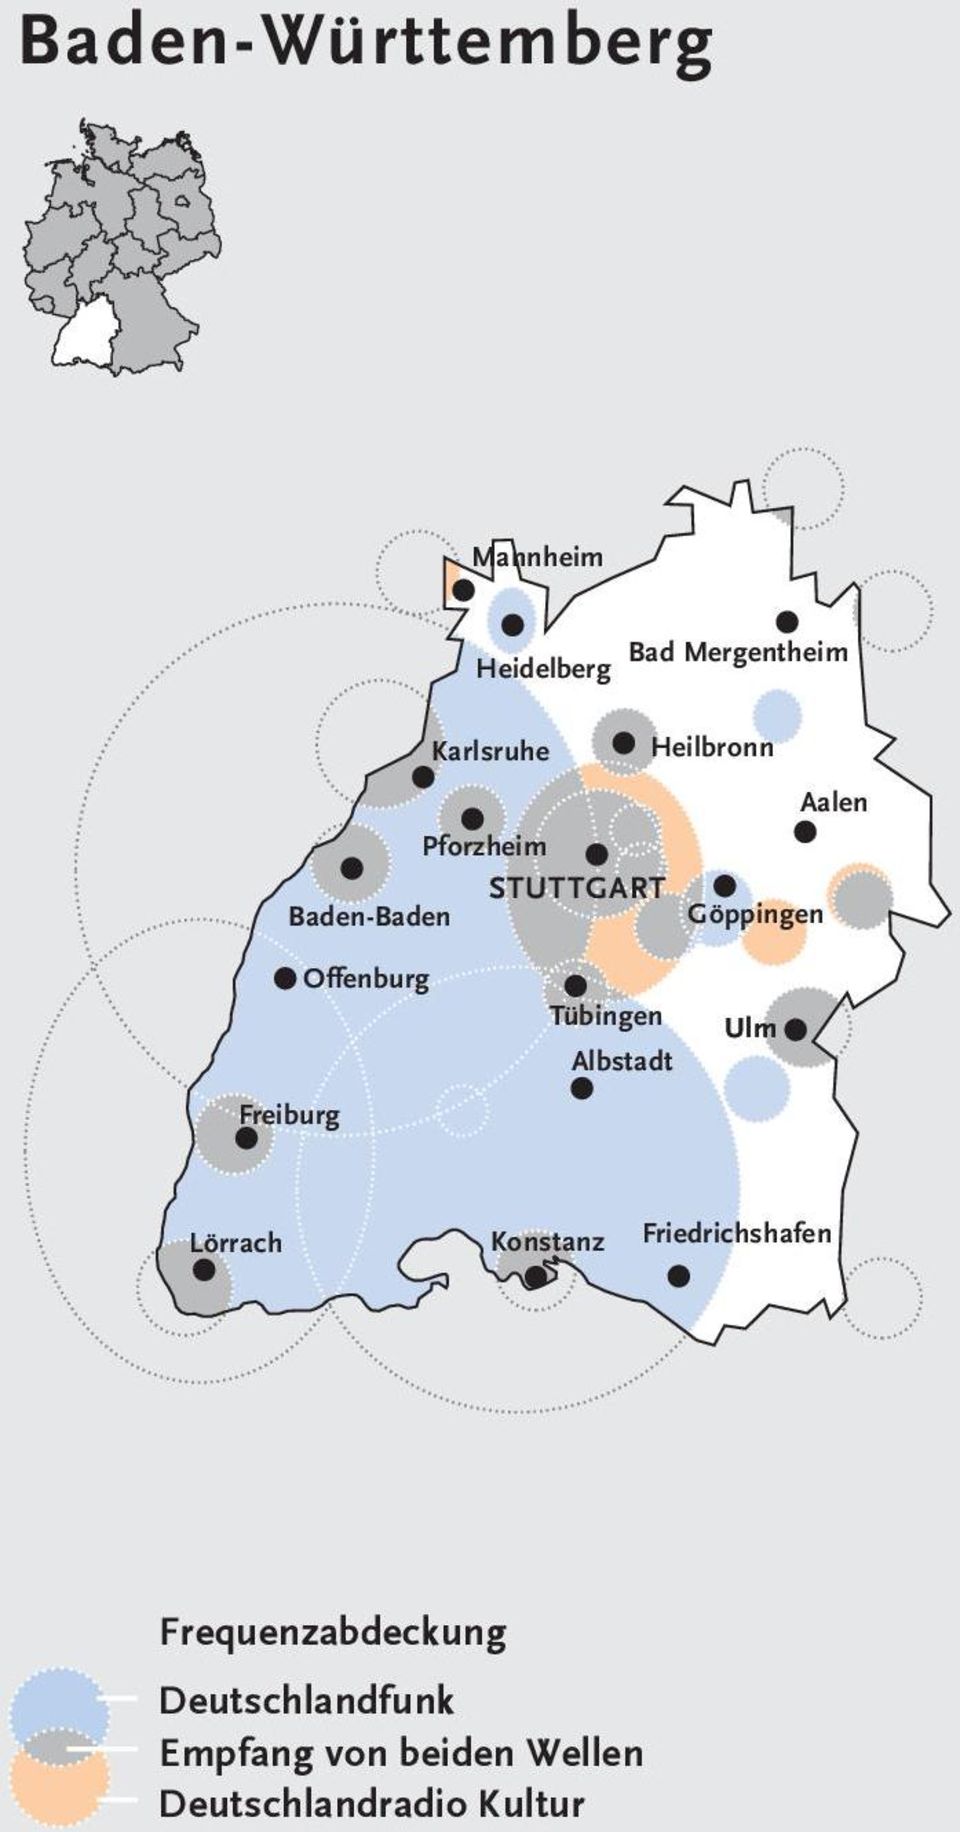 STUTTGART Baden-Baden Göppingen Freiburg Offenburg Tübingen Albstadt Ulm L Lörrach